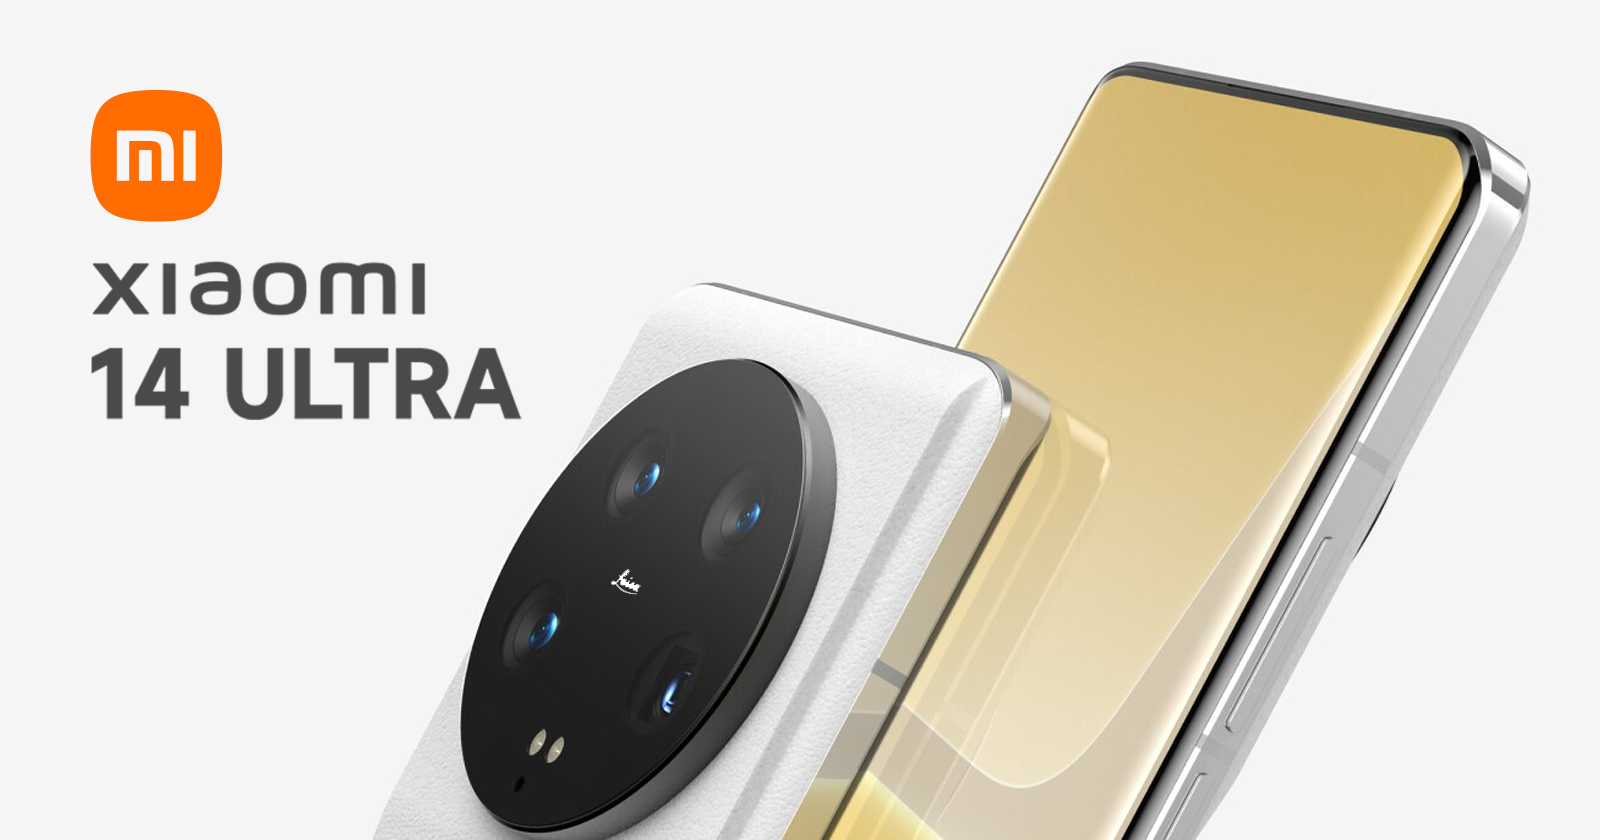 Rykten: Xiaomi 14 Ultra kommer att få två versioner - en med en frontkamera under skärmen och en vanlig